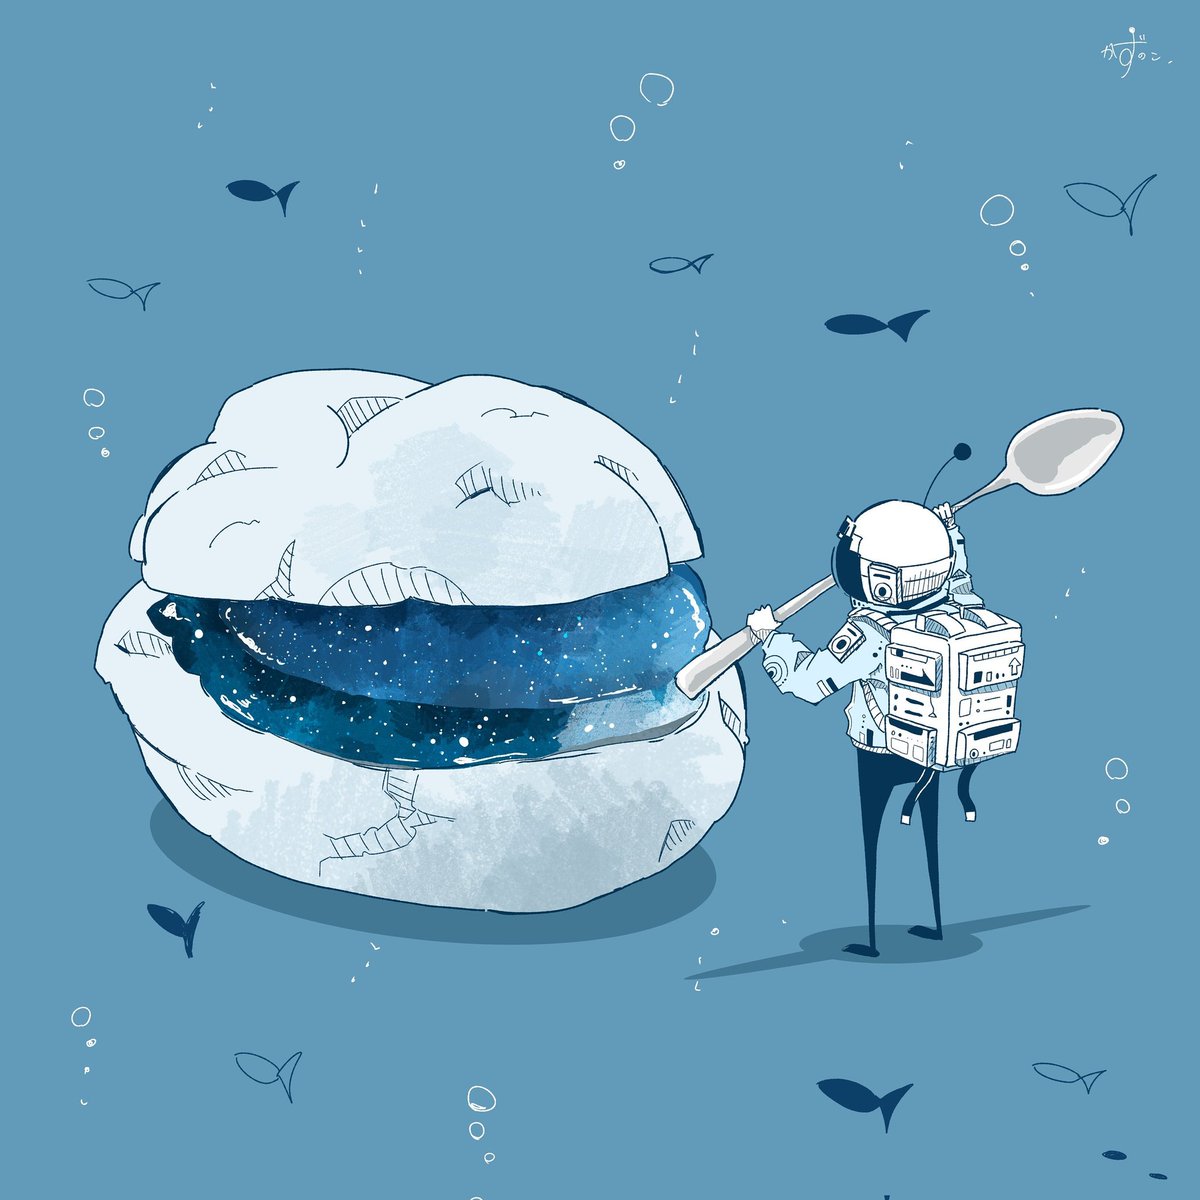 「宇宙飛行士×食べ物シリーズ
お腹すいてる人のRTを狙ってます 」|かずのこのイラスト